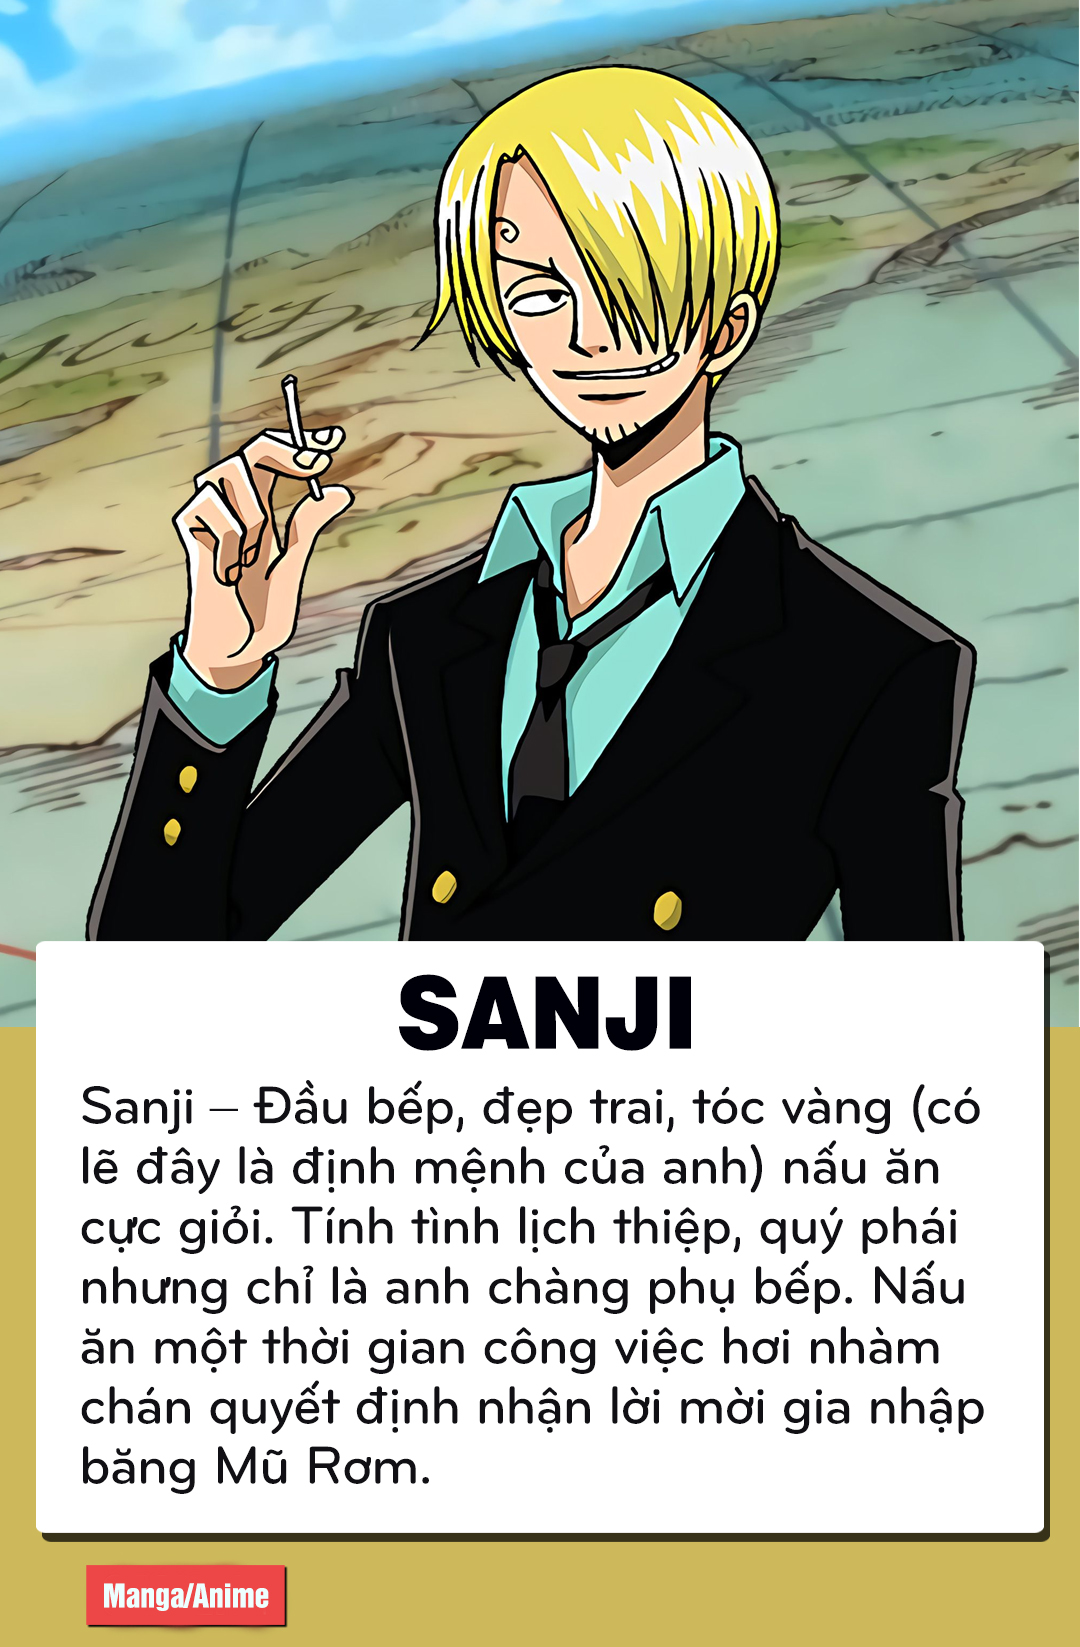 Sanji: Hãy cùng khám phá hành trình của Sanji - một đầu bếp tài ba của băng hải tặc Mũ Rơm. Với những món ăn ngon tuyệt hảo và kỹ năng chiến đấu đáng nể, Sanji là một trong những nhân vật không thể bỏ qua trong One Piece. Hãy tìm hiểu thêm về anh chàng thông qua hình ảnh đầy màu sắc và sống động.